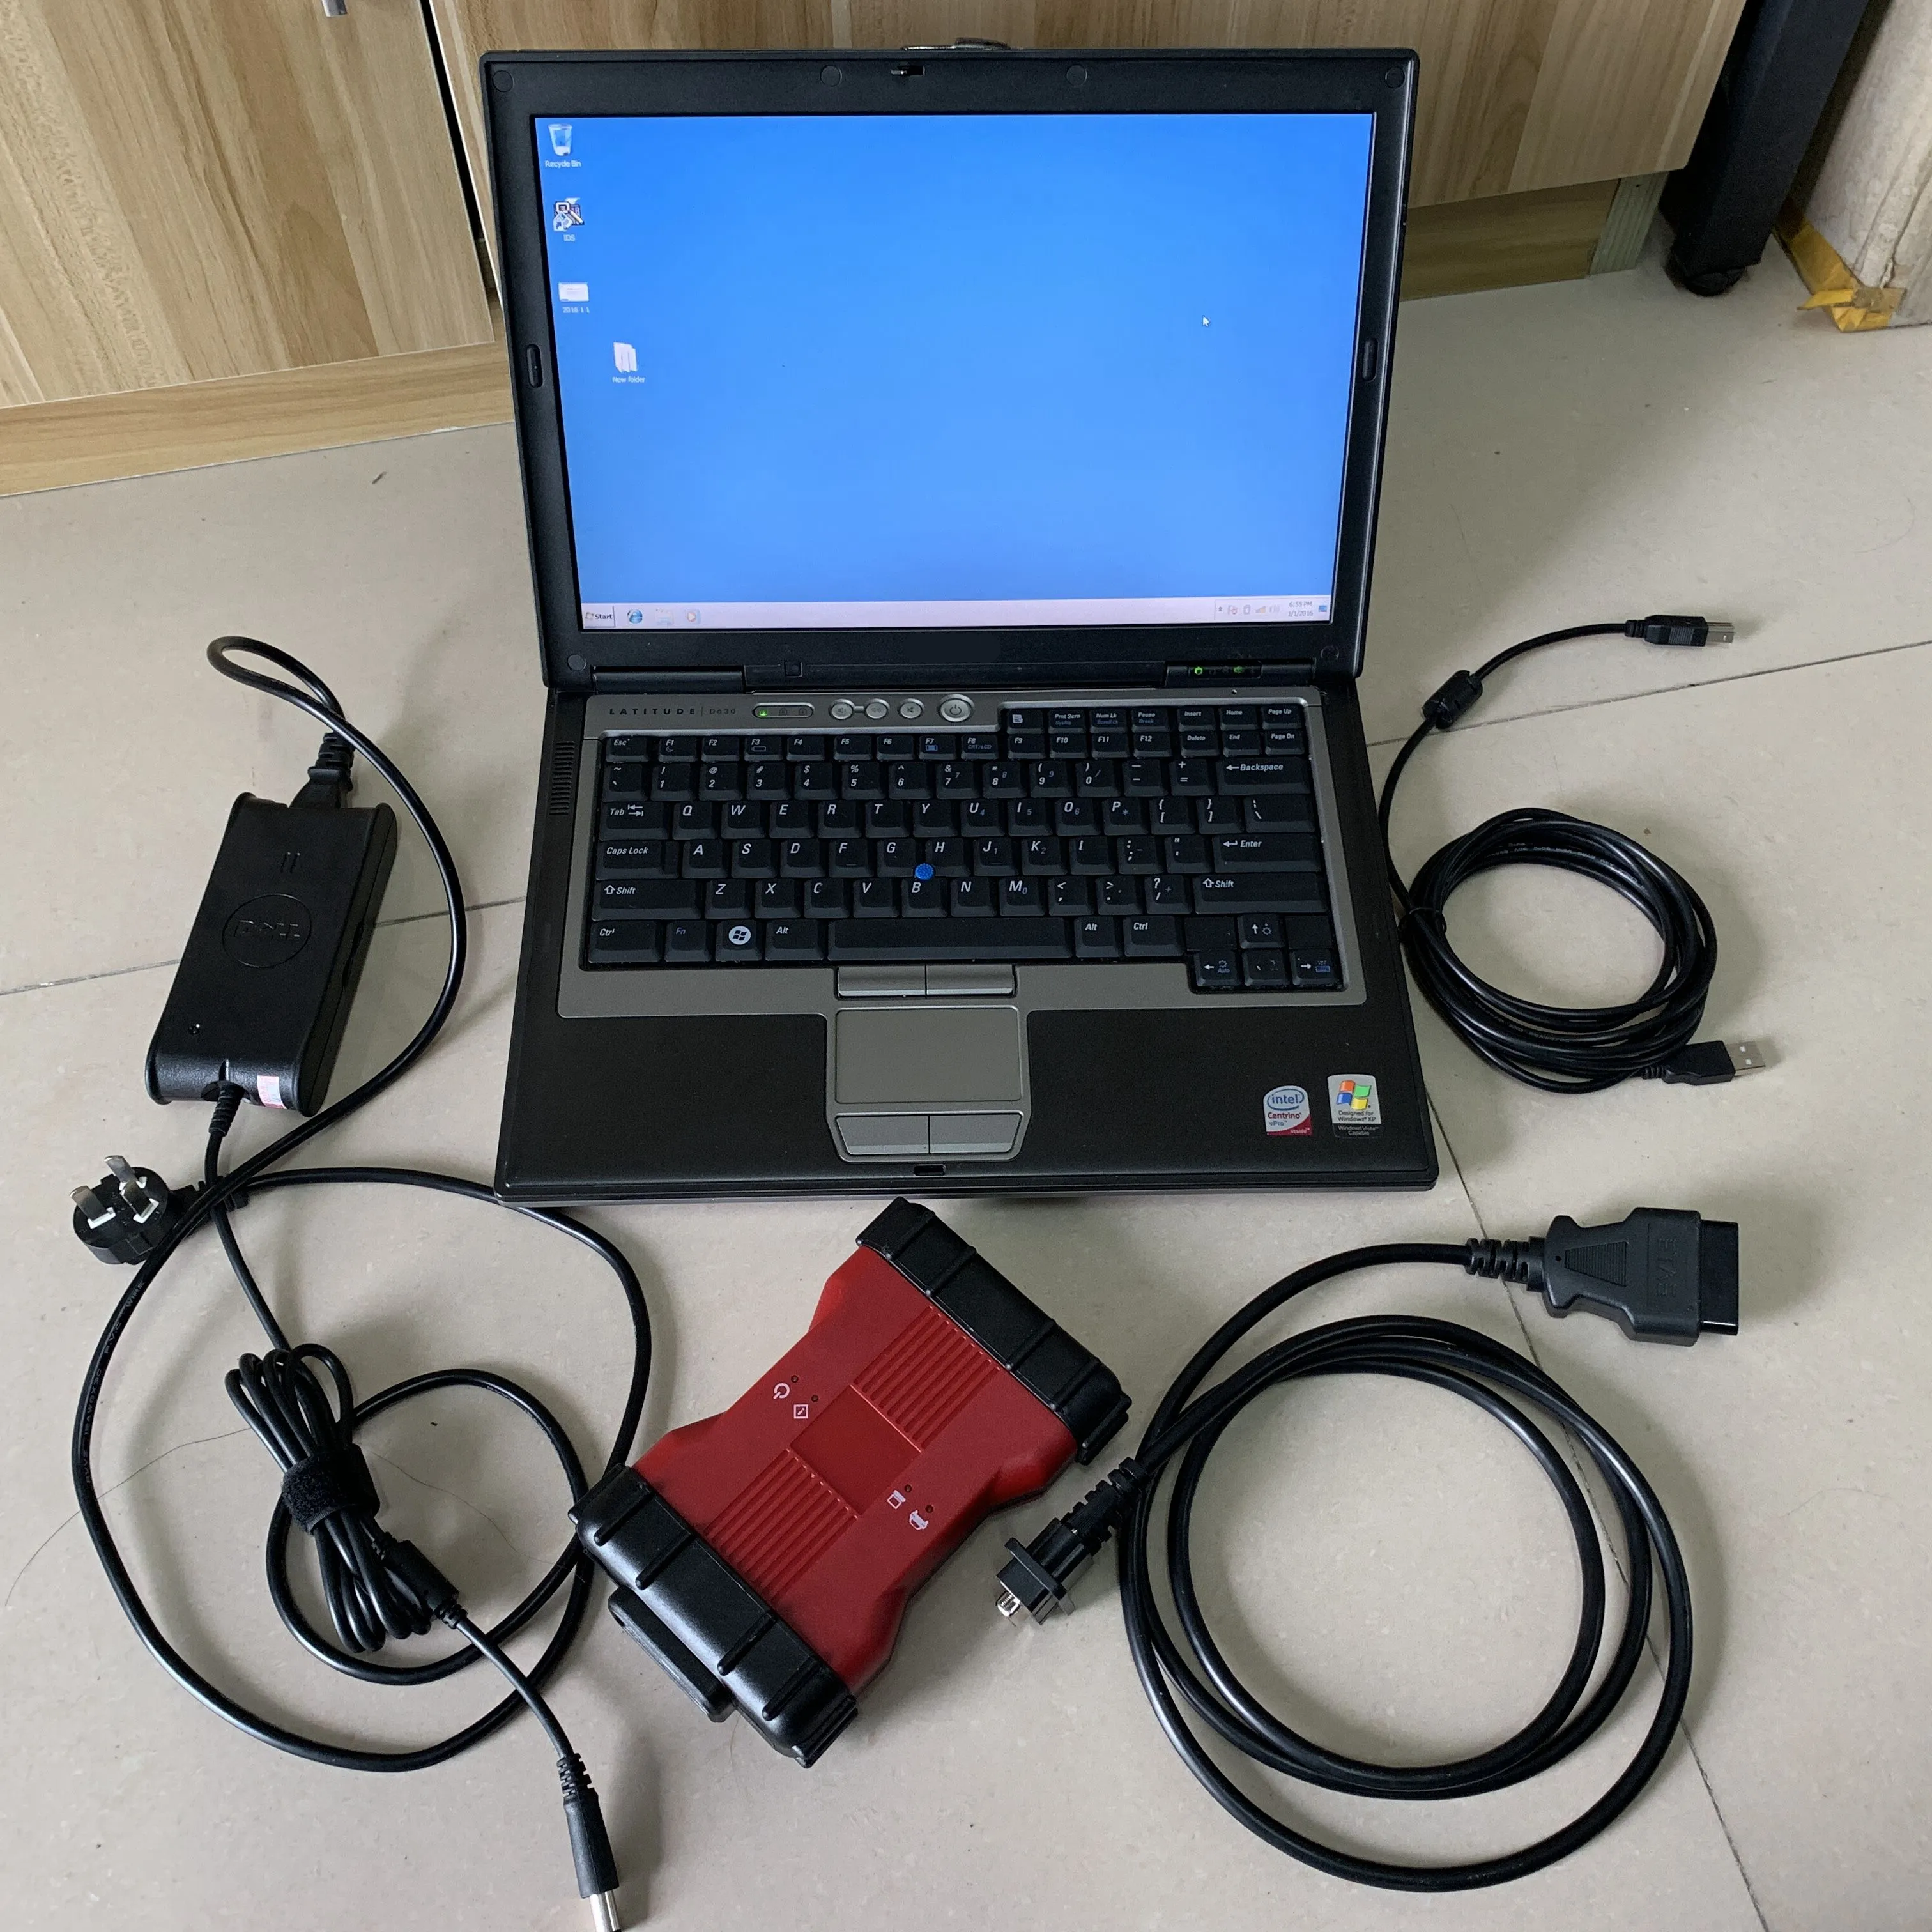 Pour outil de diagnostic f-ord VCM2 pour scanner VCM2 IDS V128/JLR V128 outil obd2 vcm 2 avec disque dur de 320 go dans un ordinateur portable utilisé D630